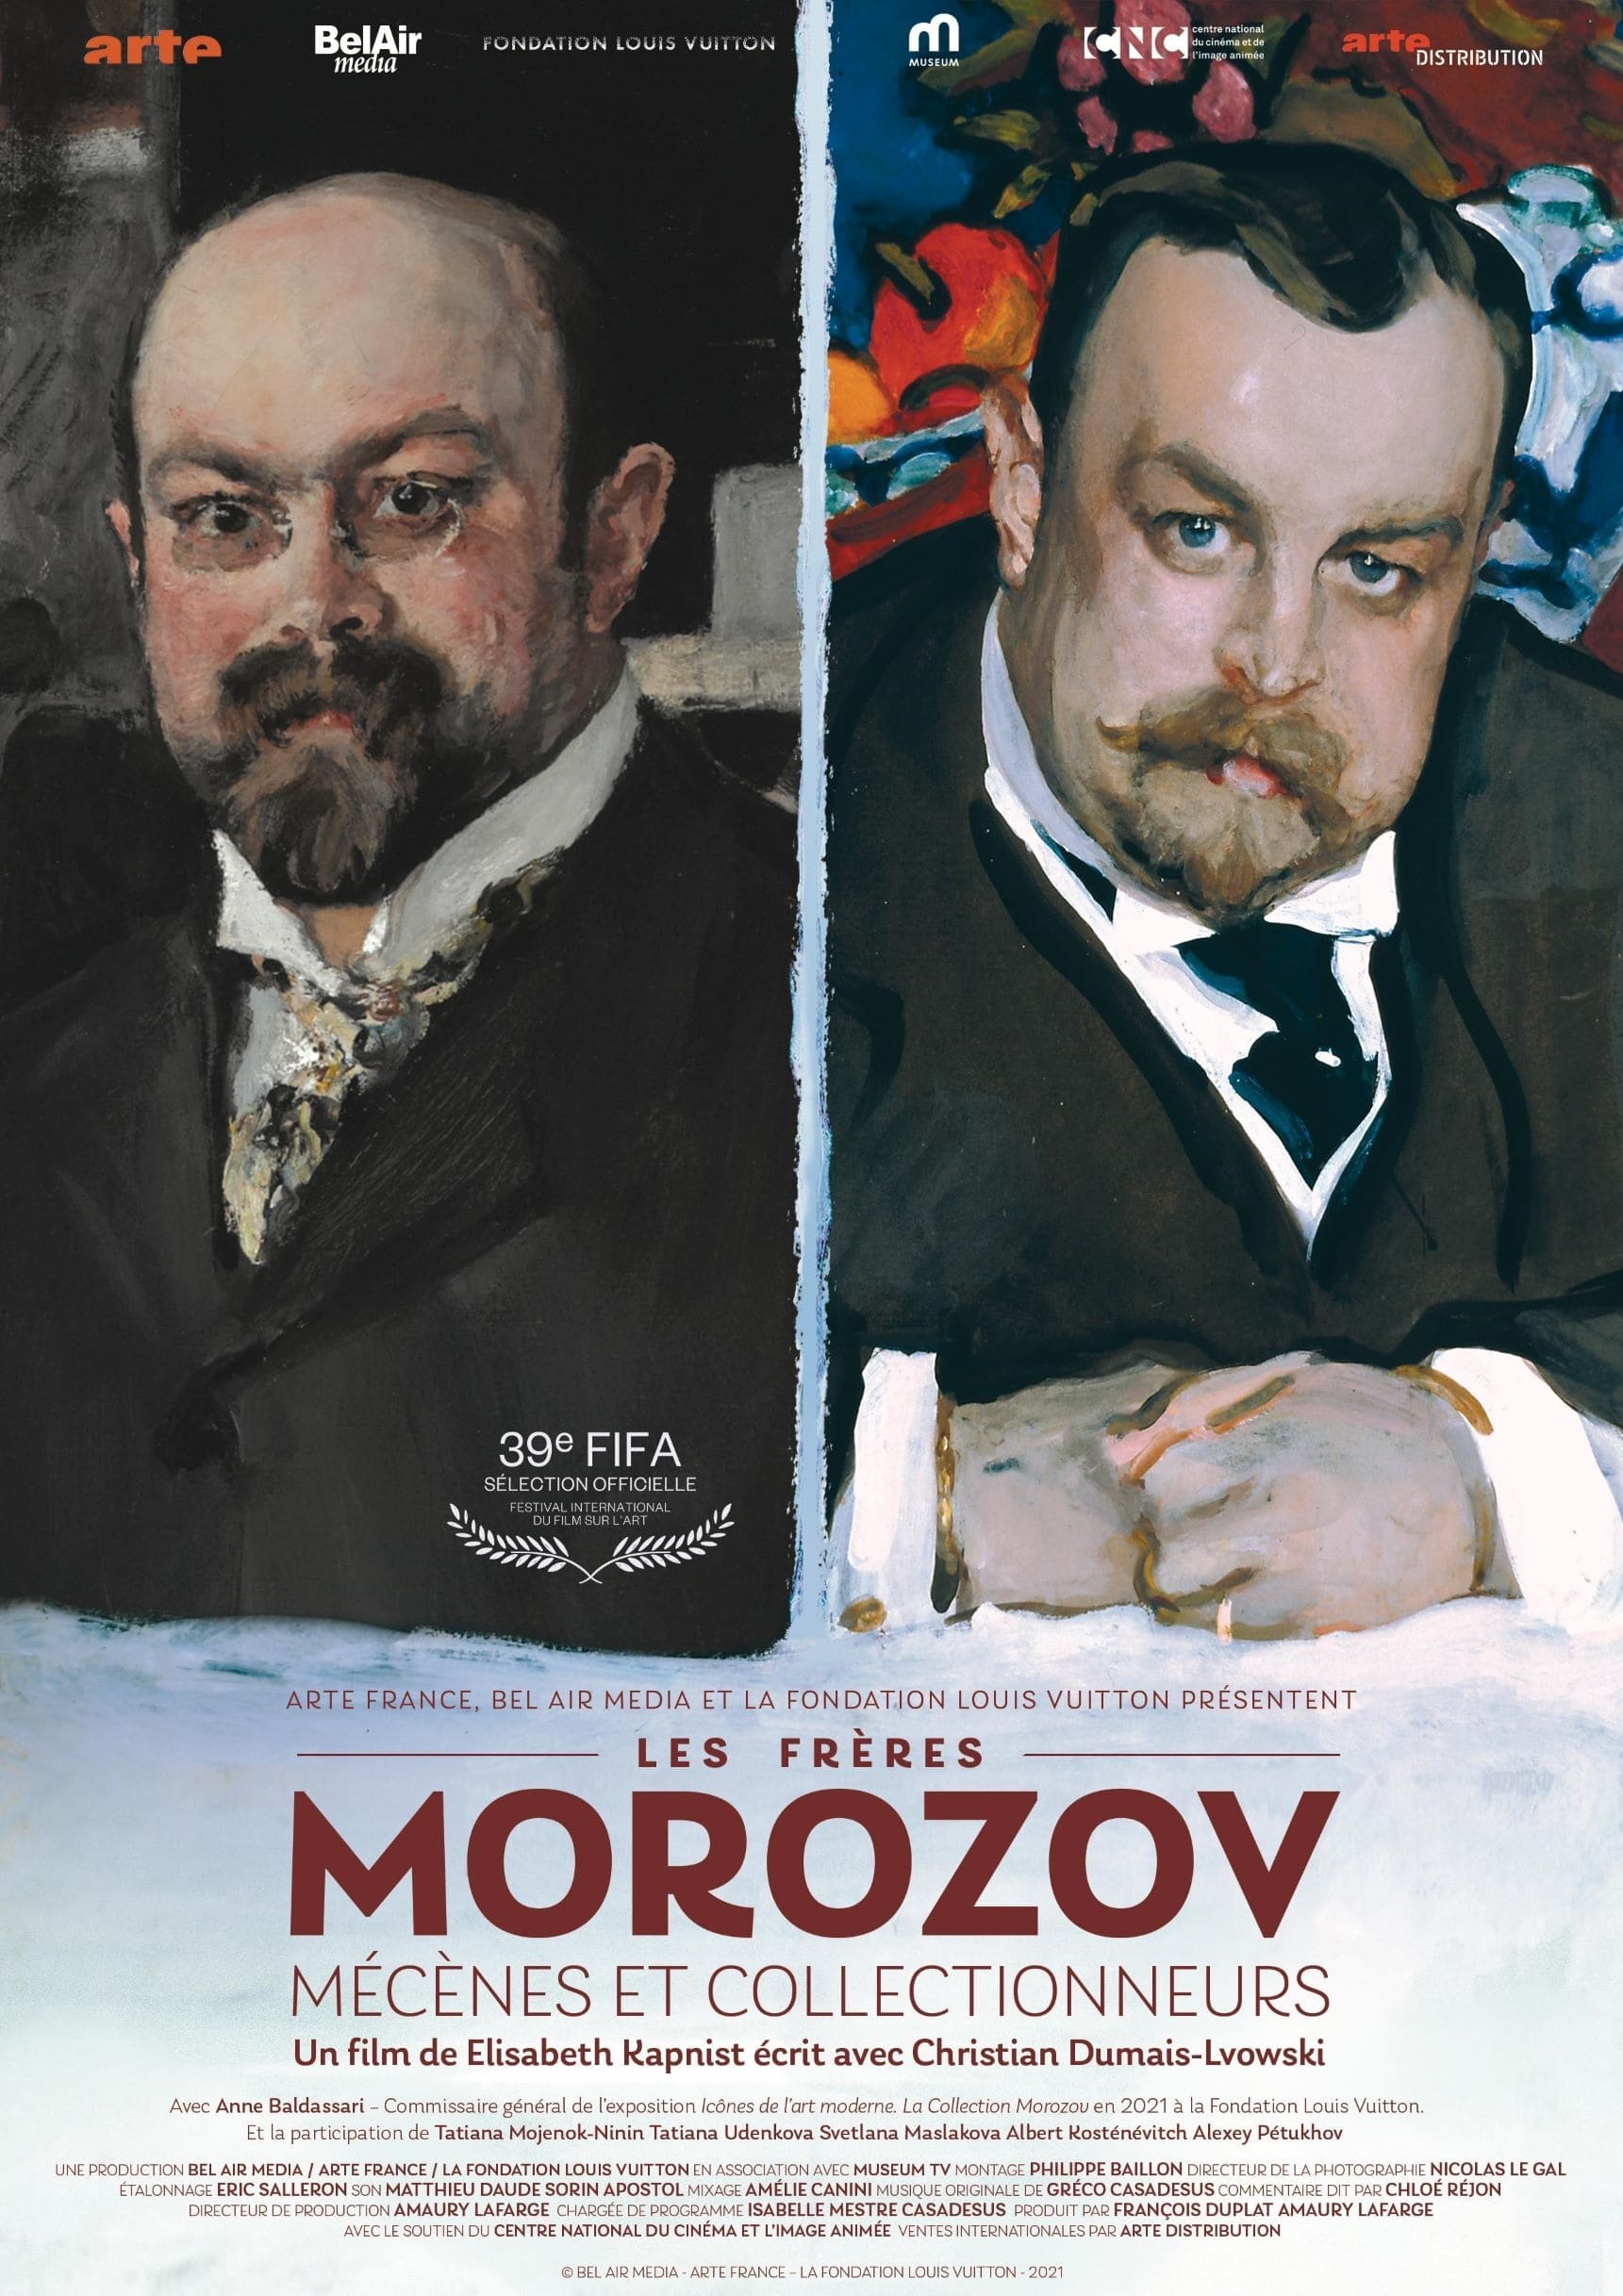 Les Frères Morozov, Mécènes et collectionneurs